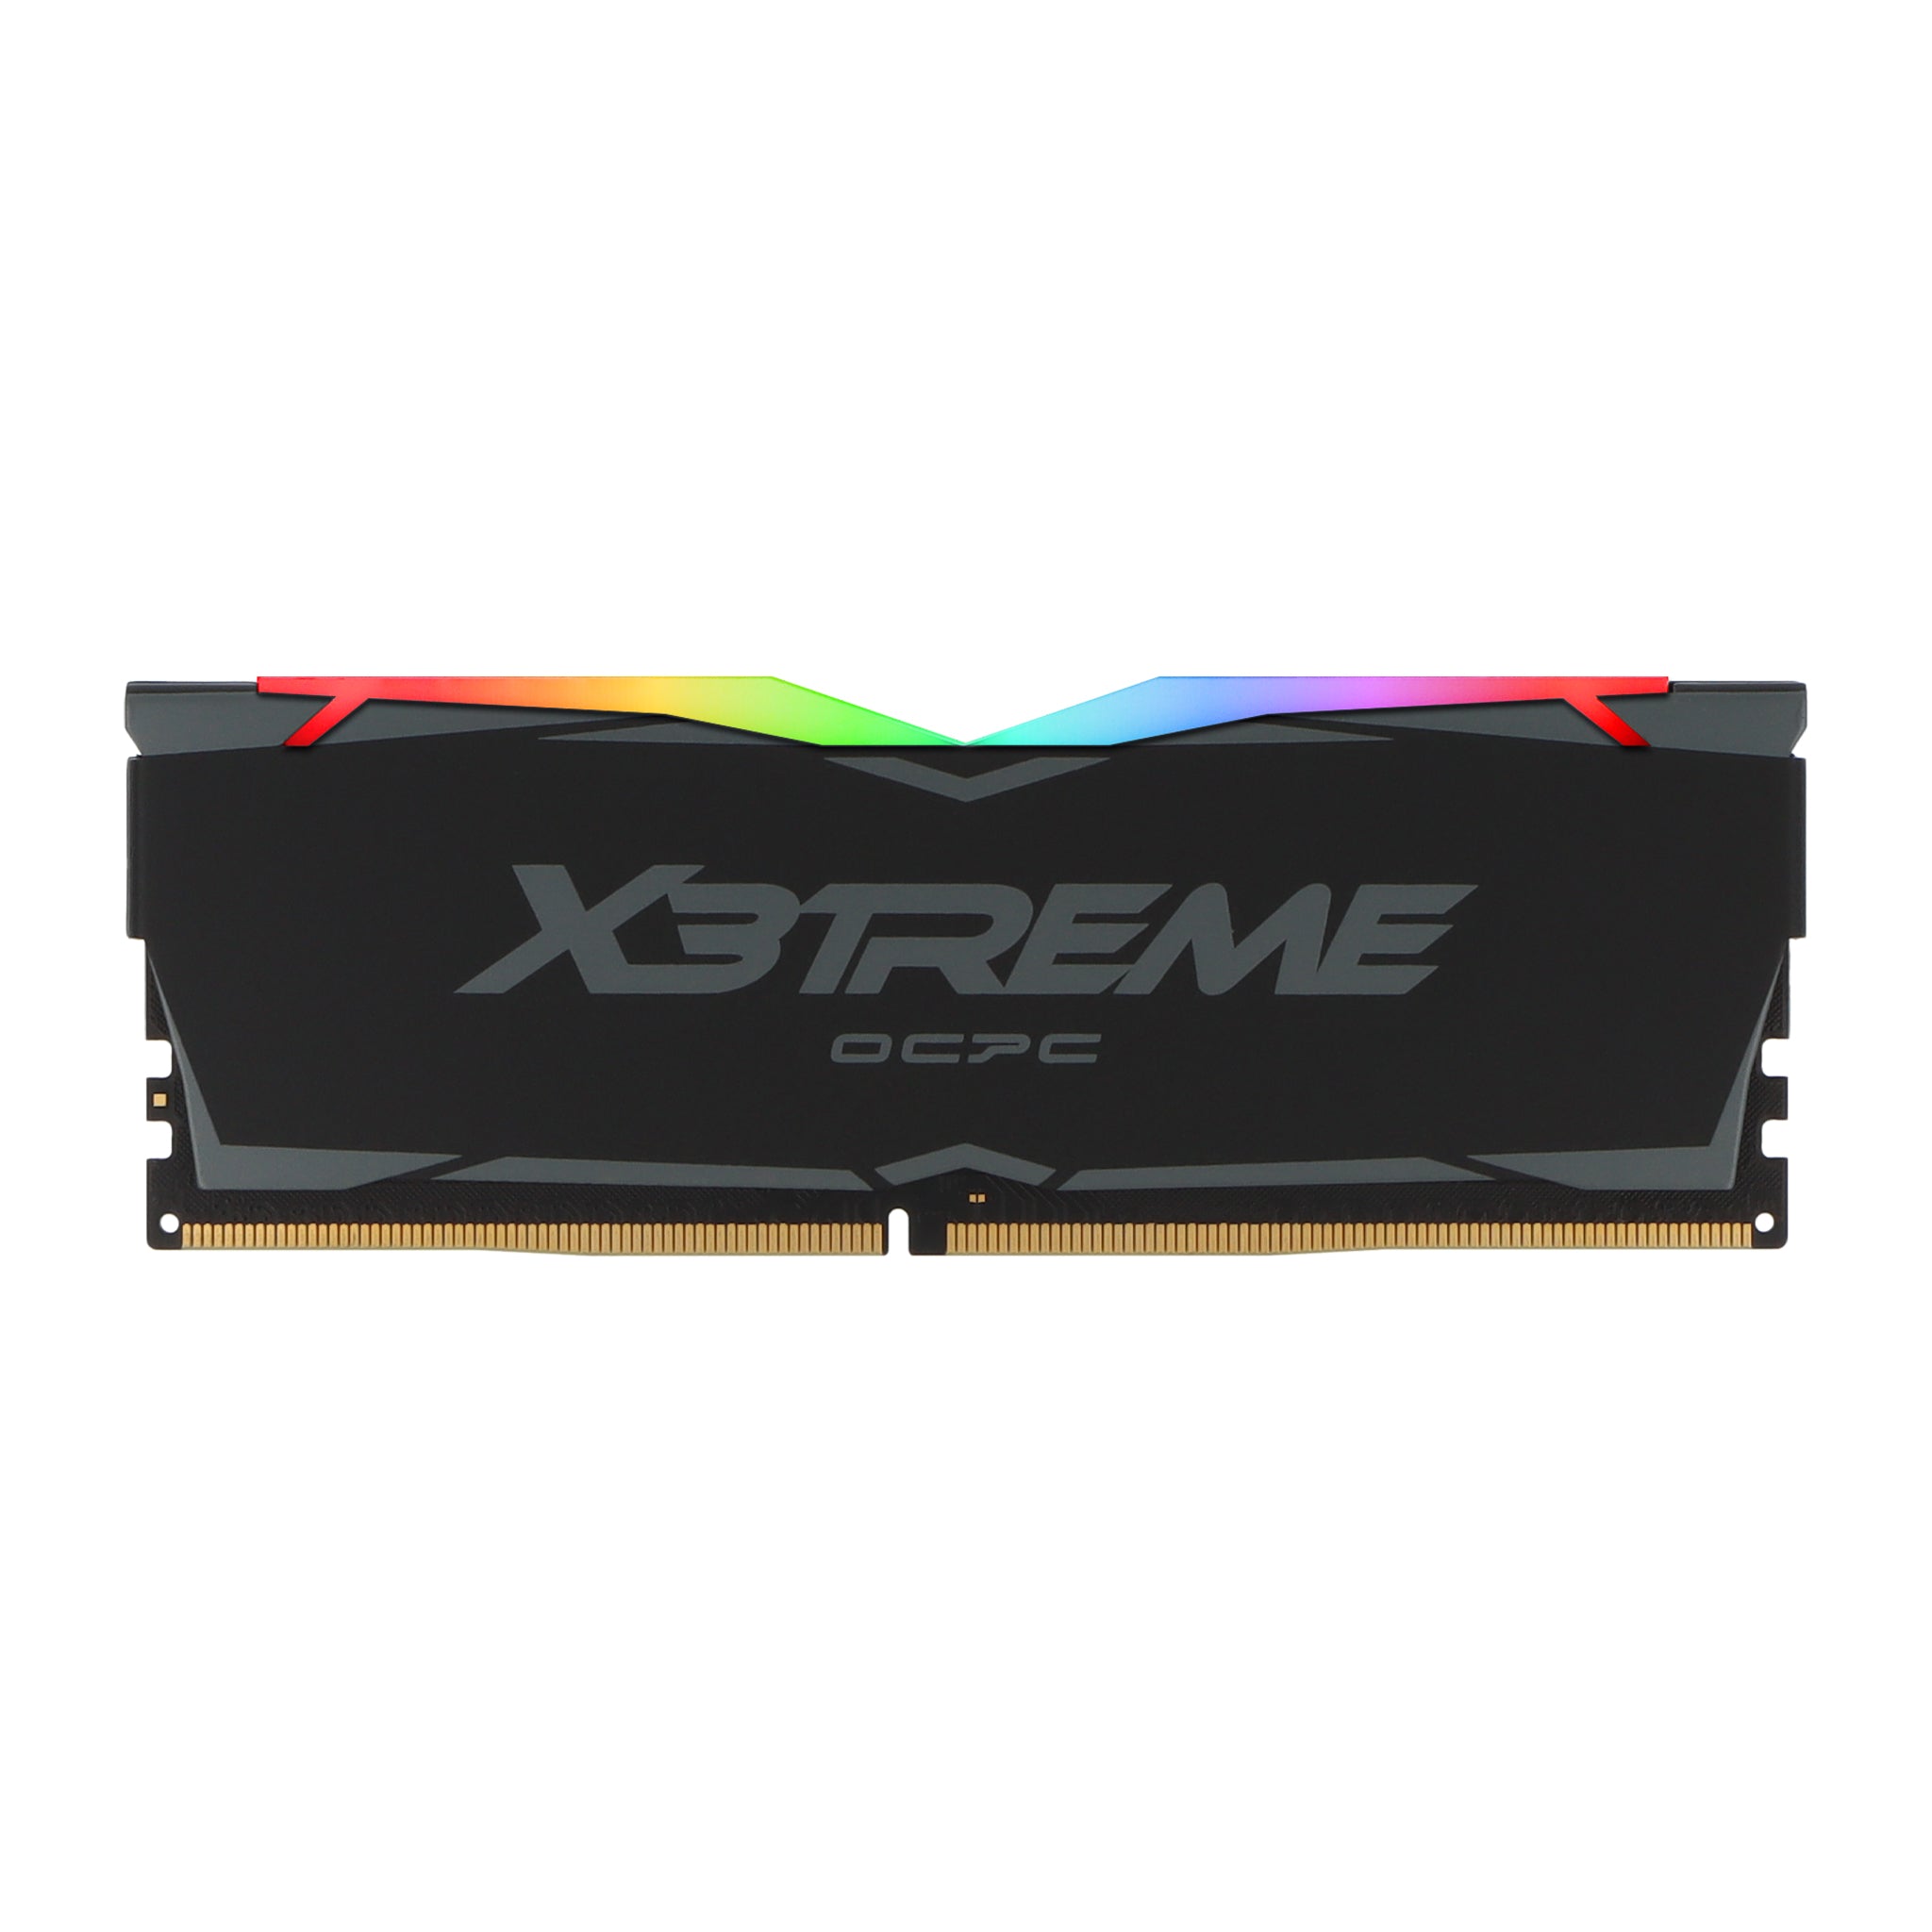 OCPC X3Treme DDR4 16GB 3200MHz – VisionTek.com